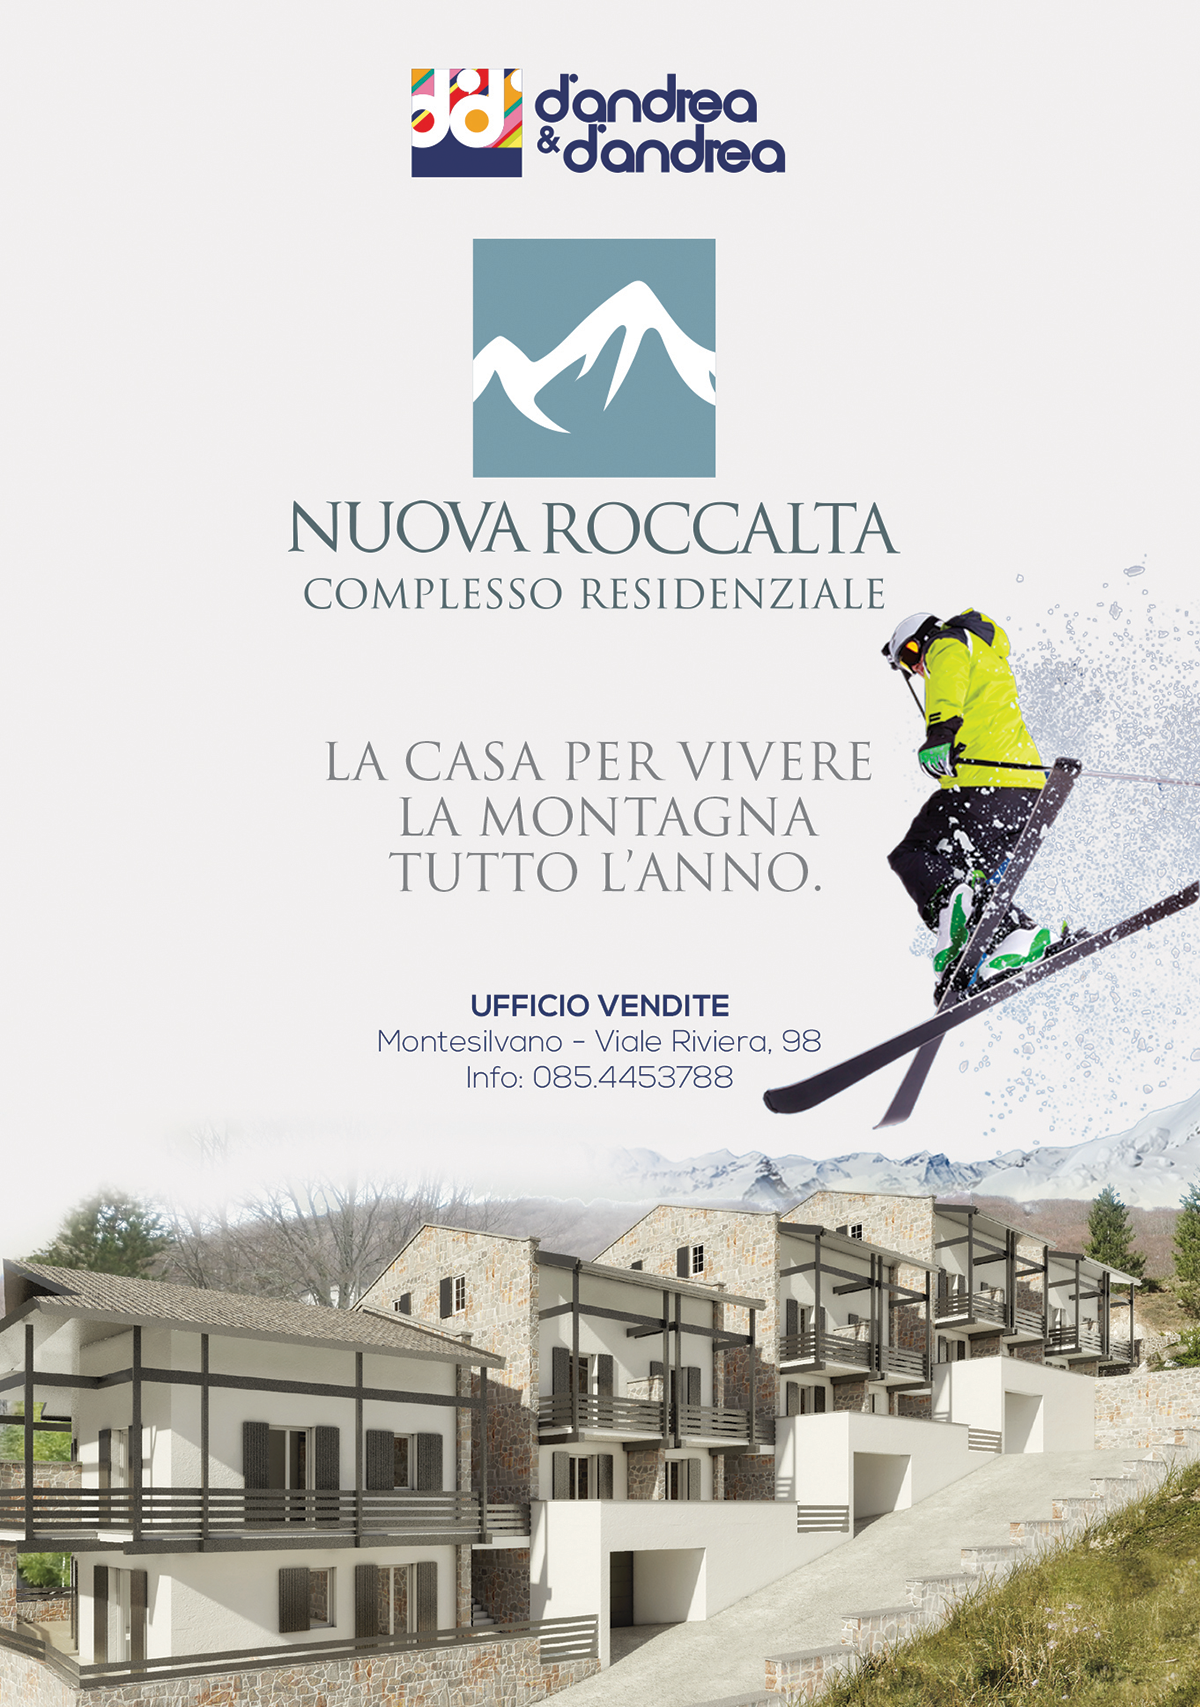 Ideazione e realizzazione layout per complesso residenziale 'Nuova Roccalta' a Roccaraso  (Aq)